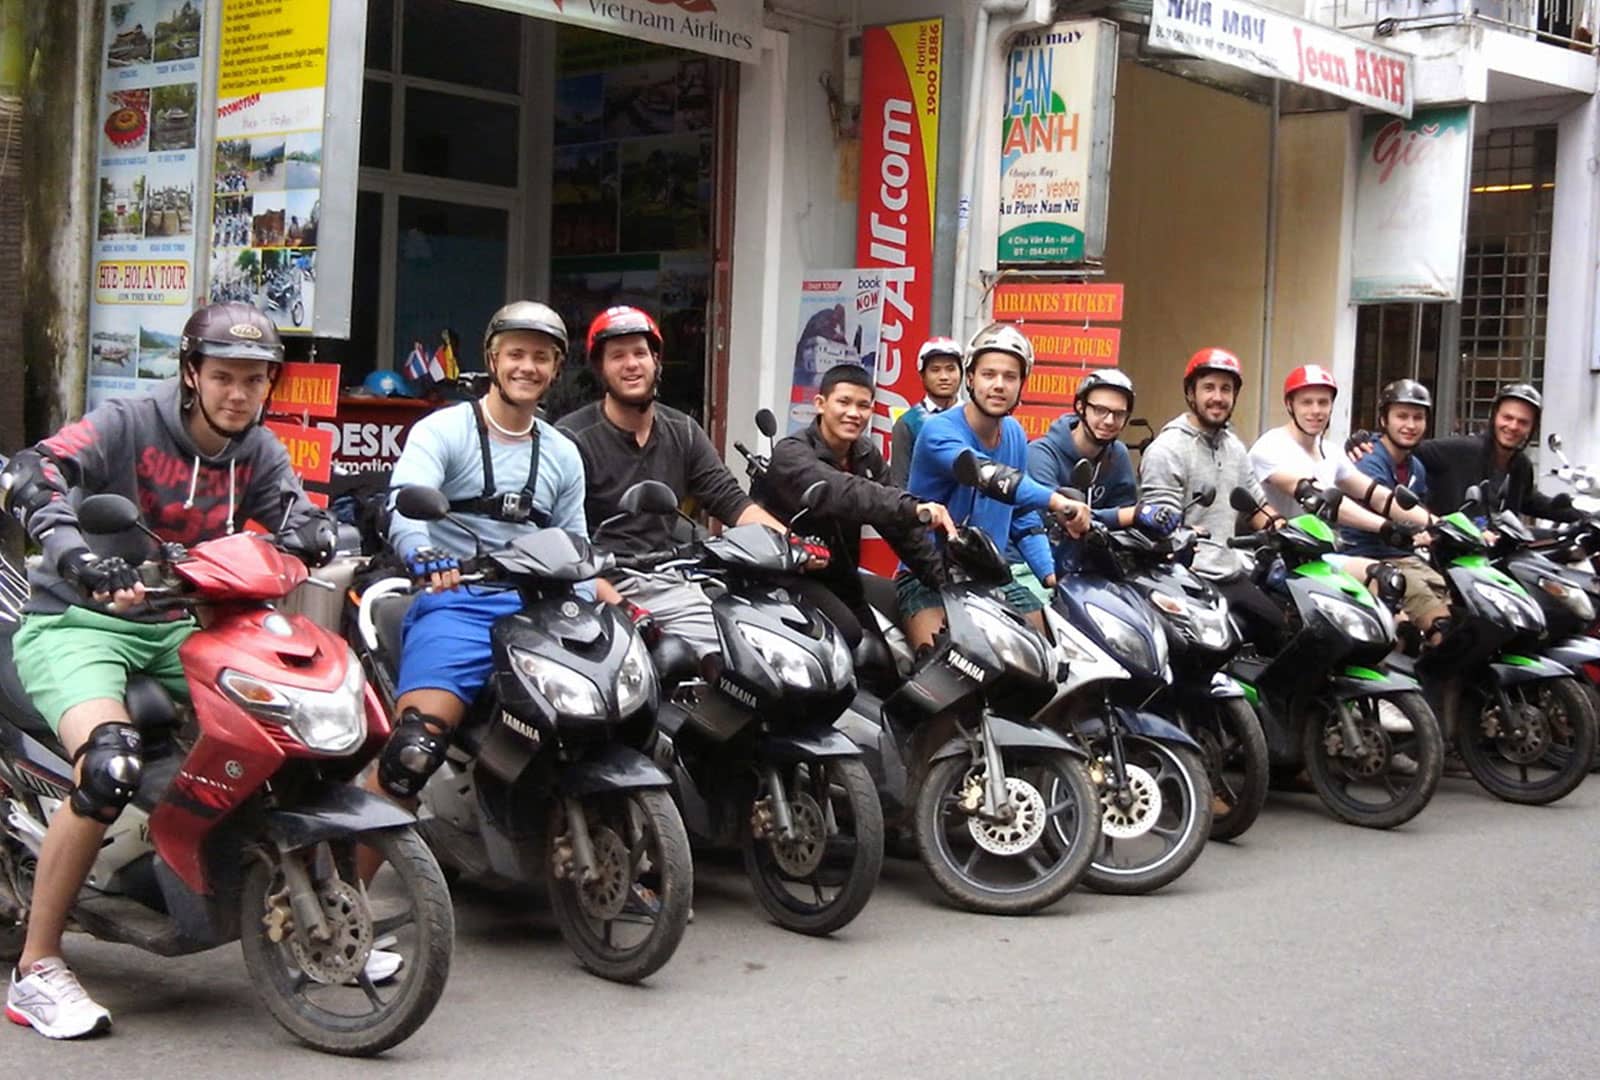 Hue Motorbike Tour - Hue Motorbike Rental cho thuê xe máy và đi tour xe máy